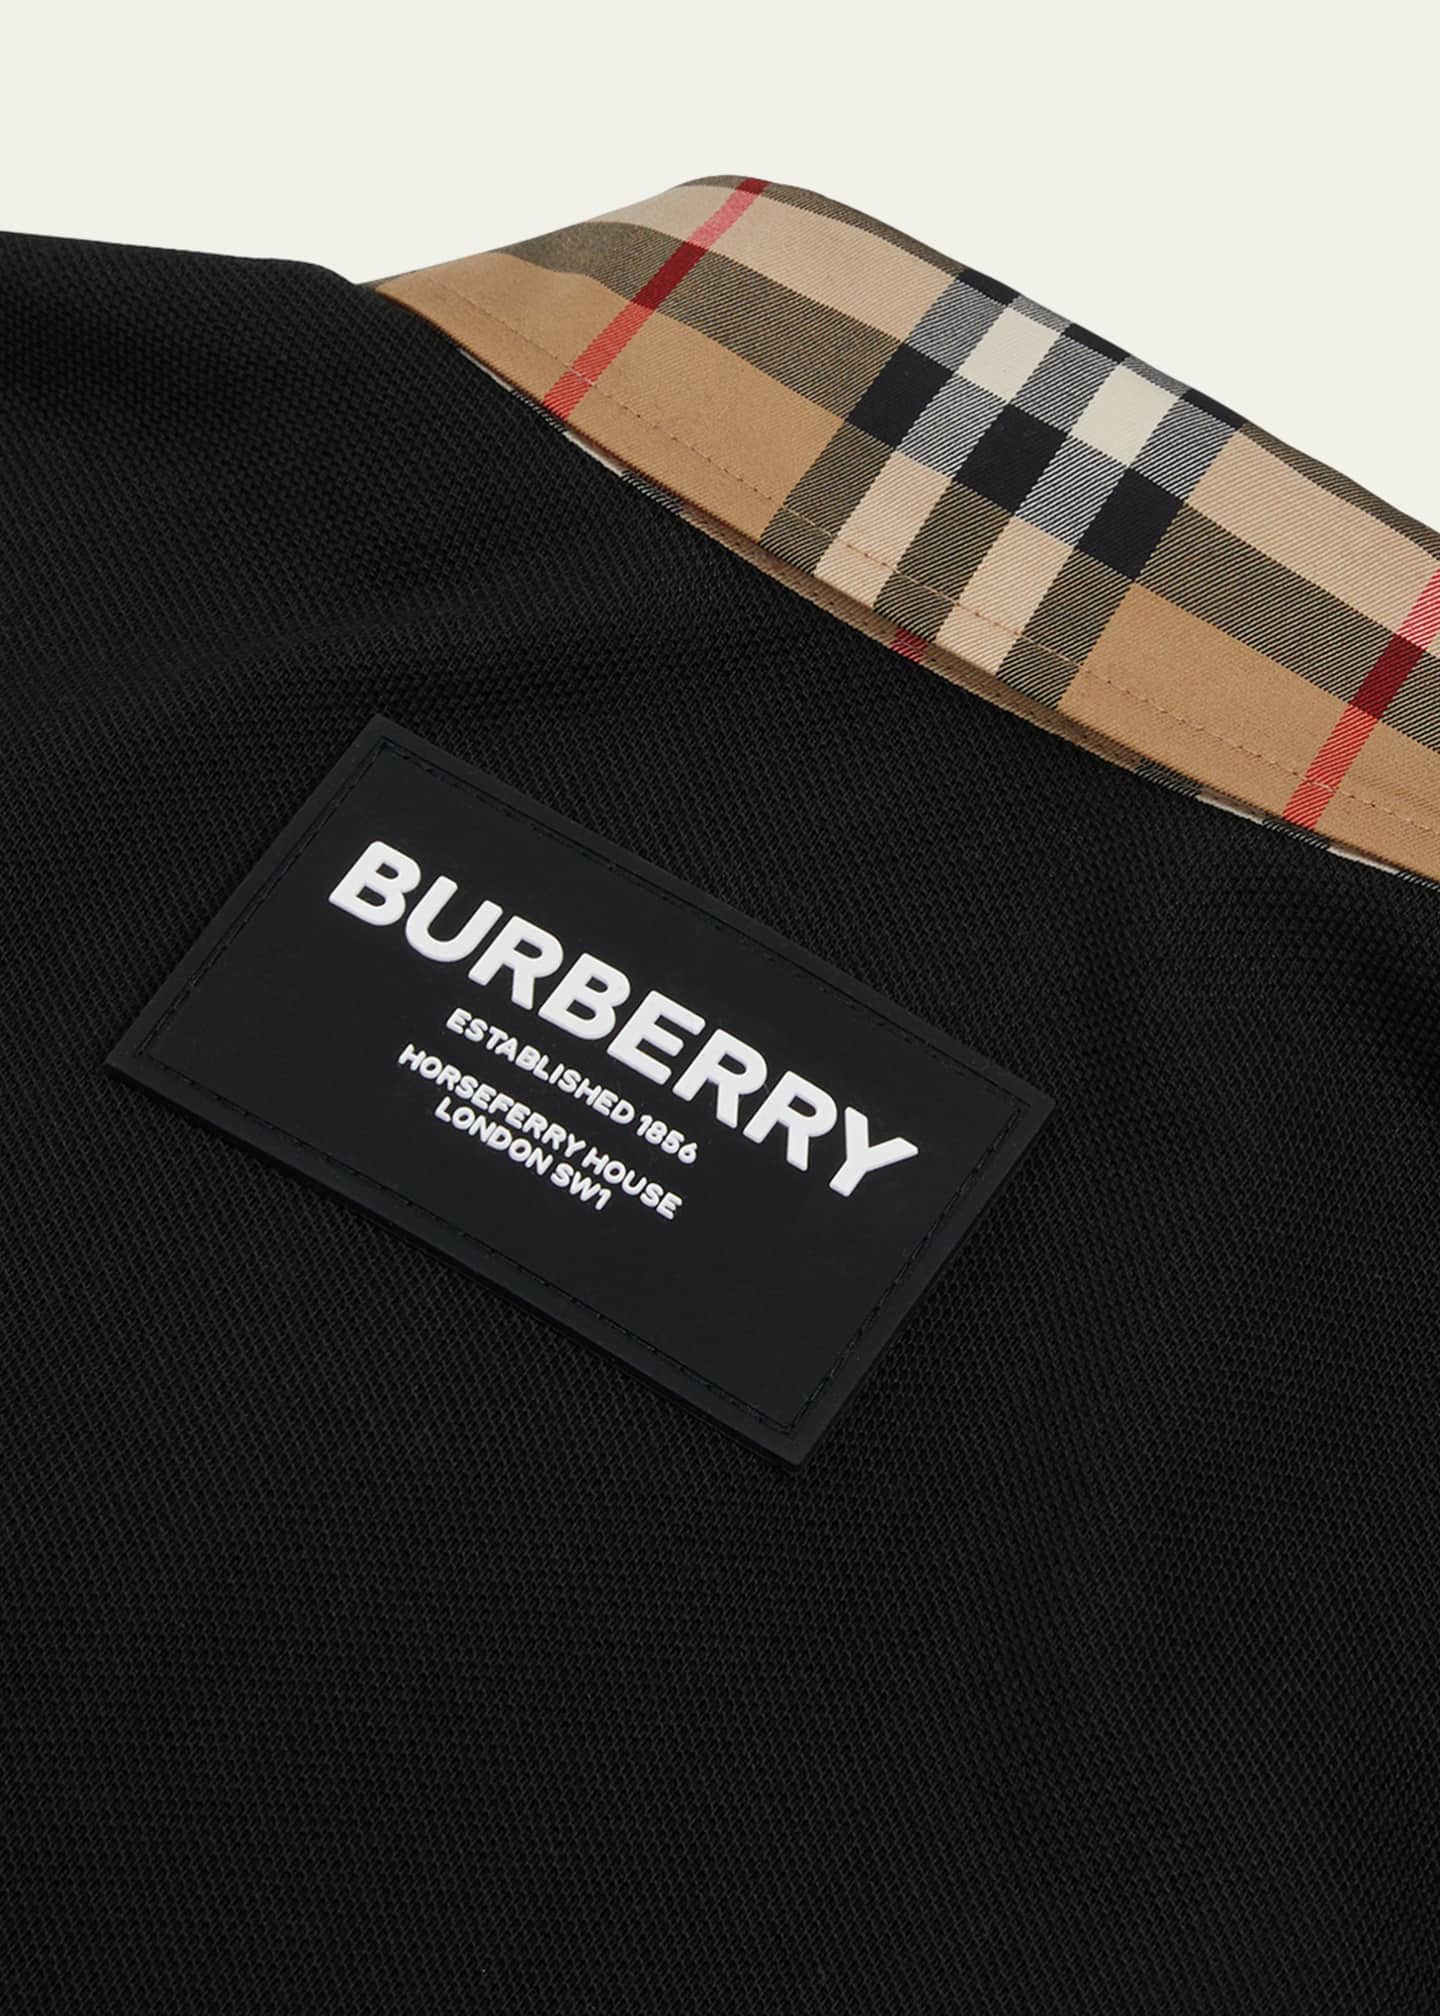 Shop Burberry Stripes Logo Money Clips by ke.go